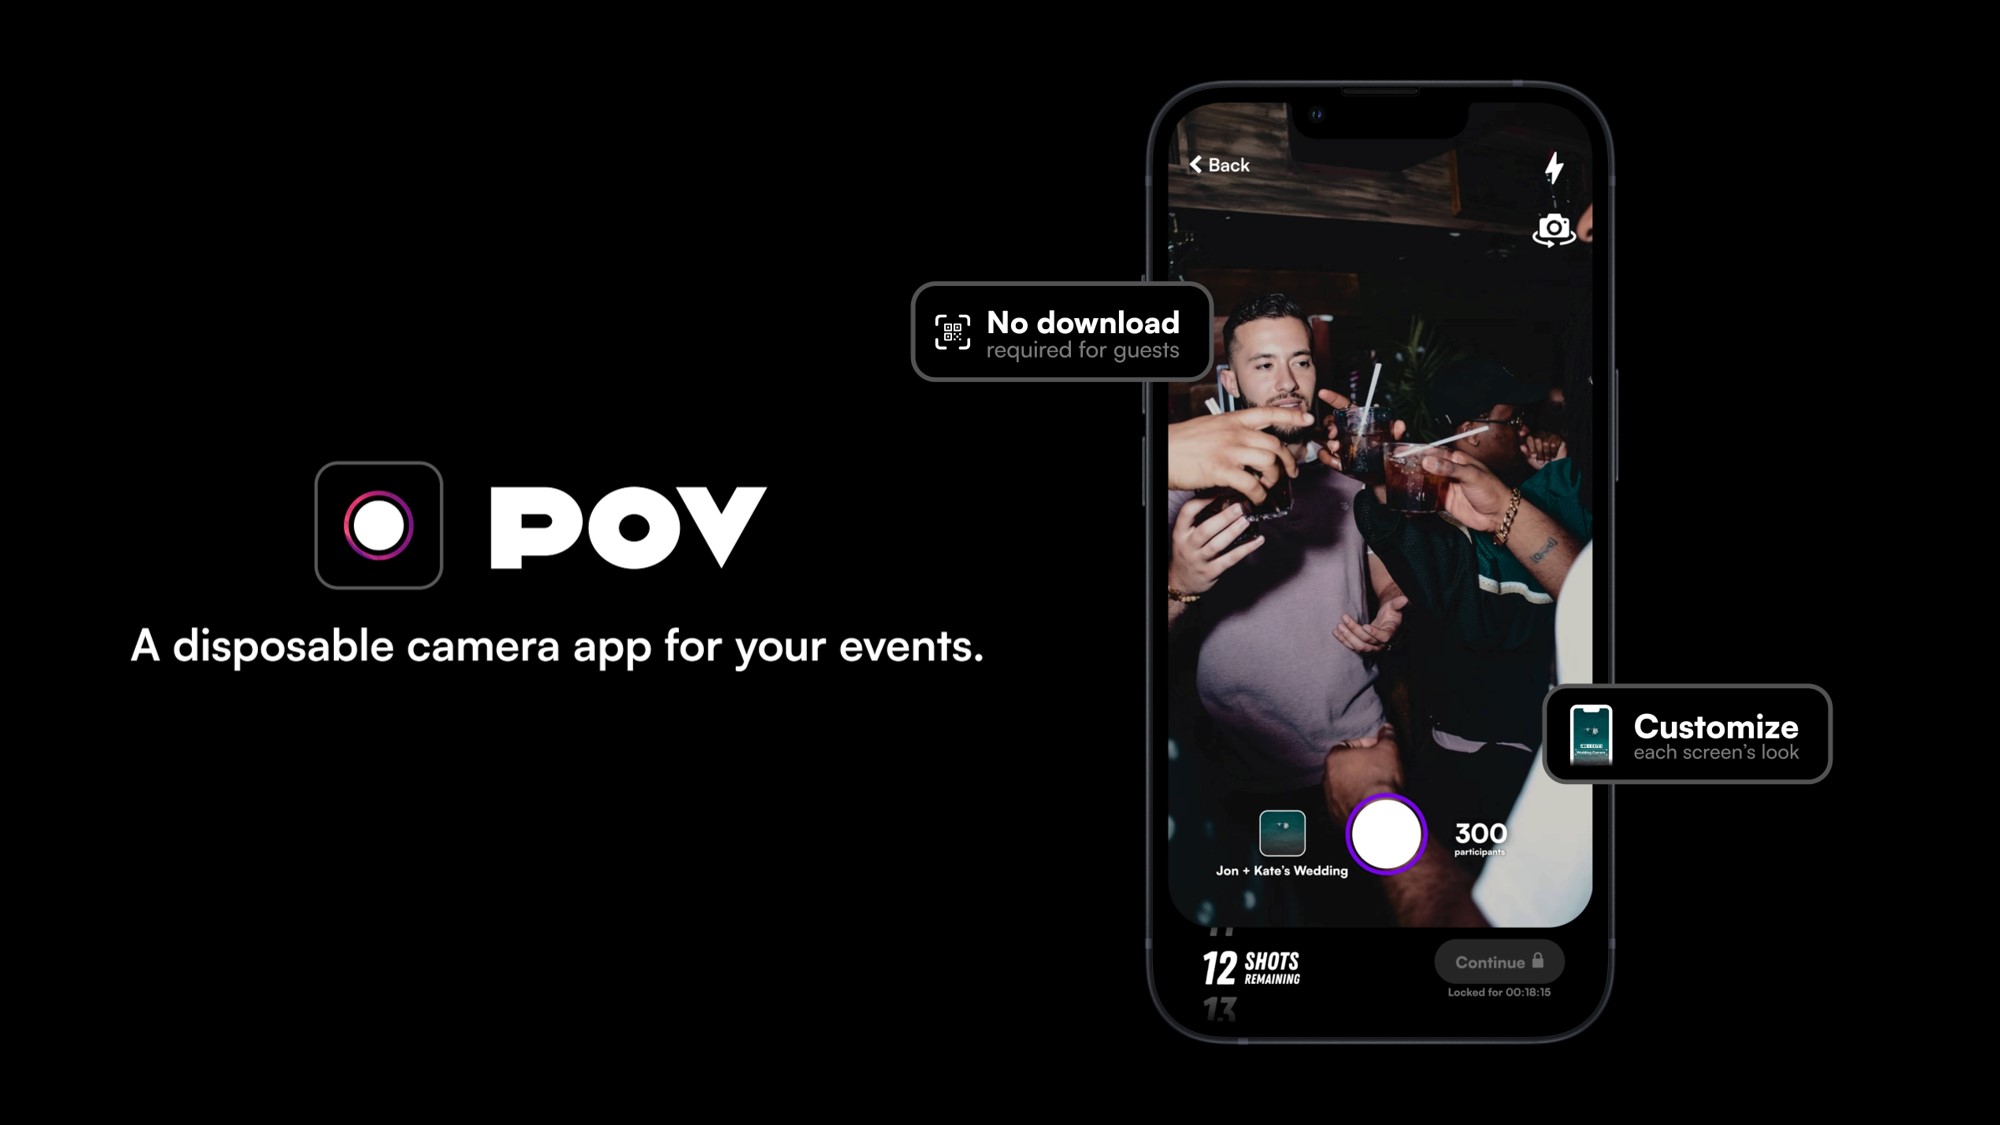 Usuarios de iPhone pueden compartir fotos de un evento con esta app y crear un álbum fotográfico 